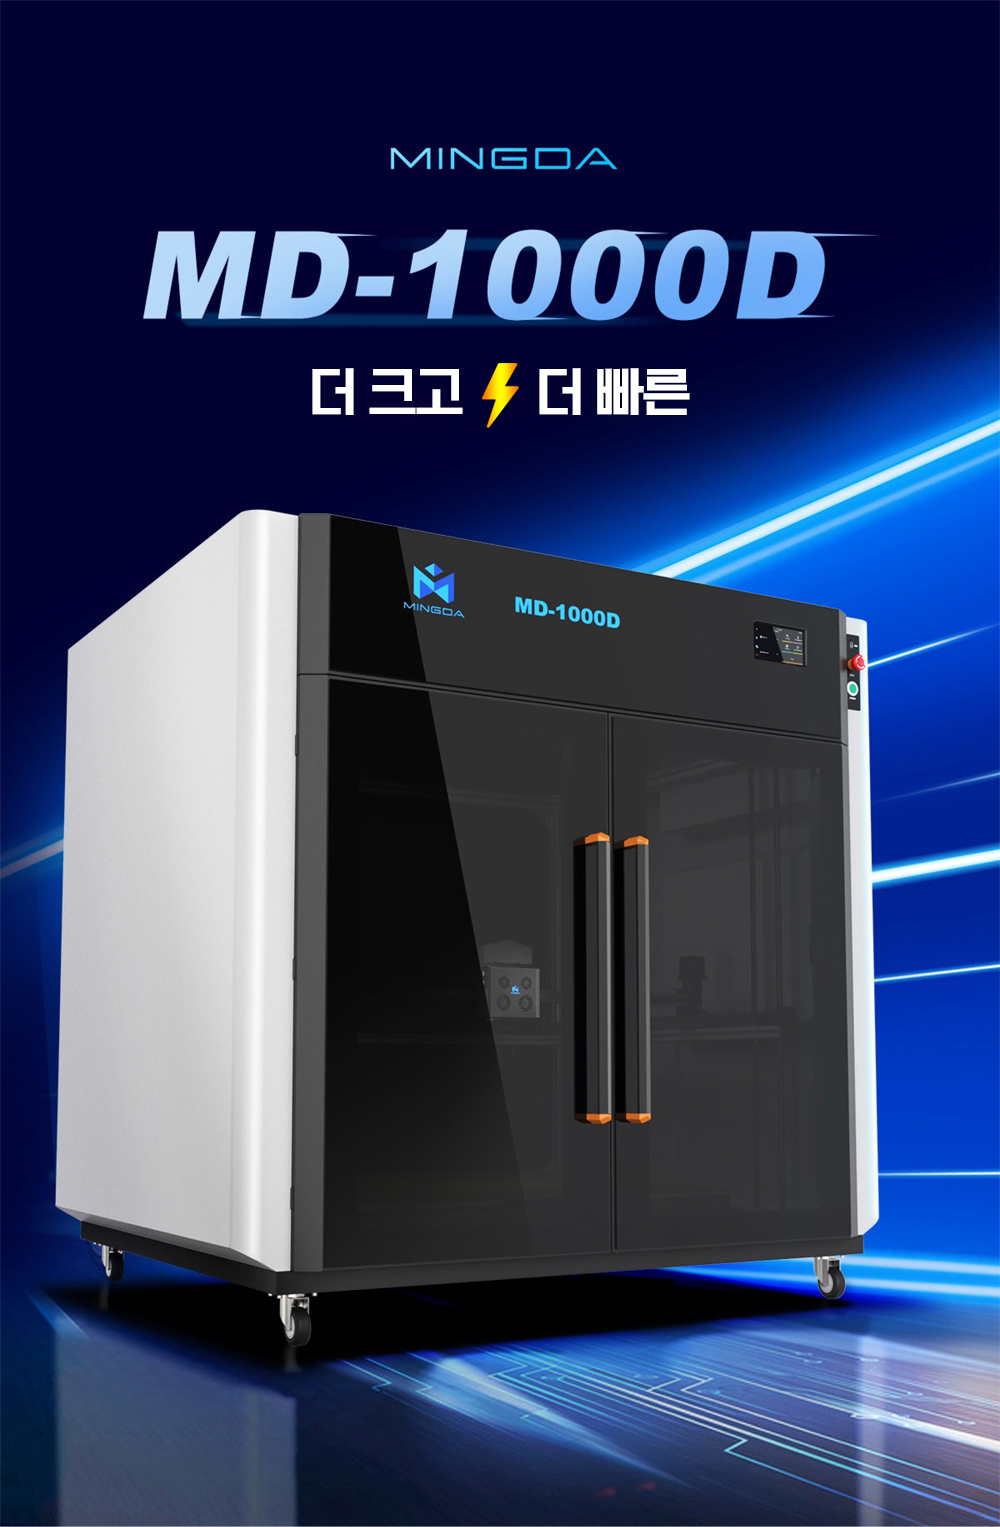 Mingda MD-1000D 밍다 3D프린터; 1000mm x 1000mmx 1000mm 초대형 3D프린터 덕유항공